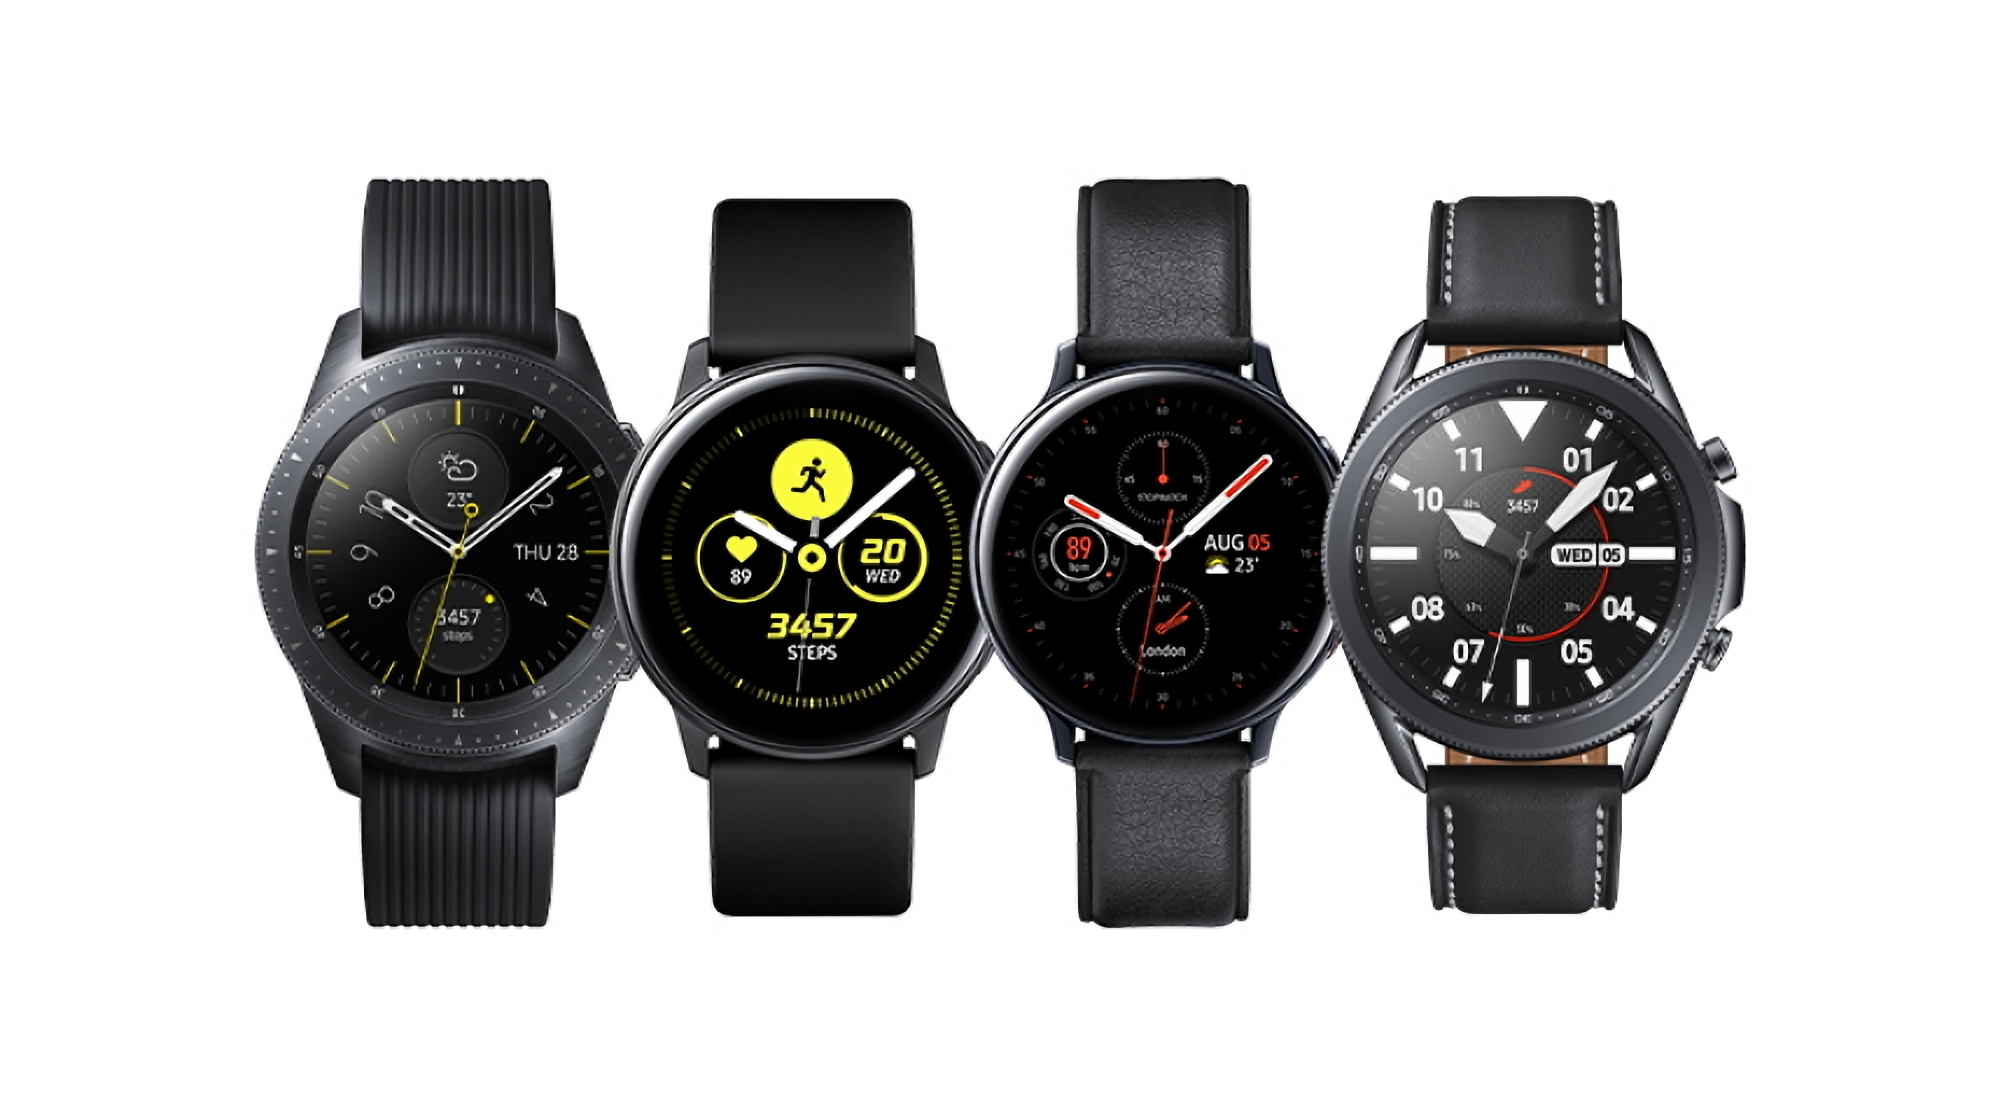 Original-Smartwatches Samsung Galaxy Watch und Galaxy Watch Active erhalten ab sofort ein neues Software-Update